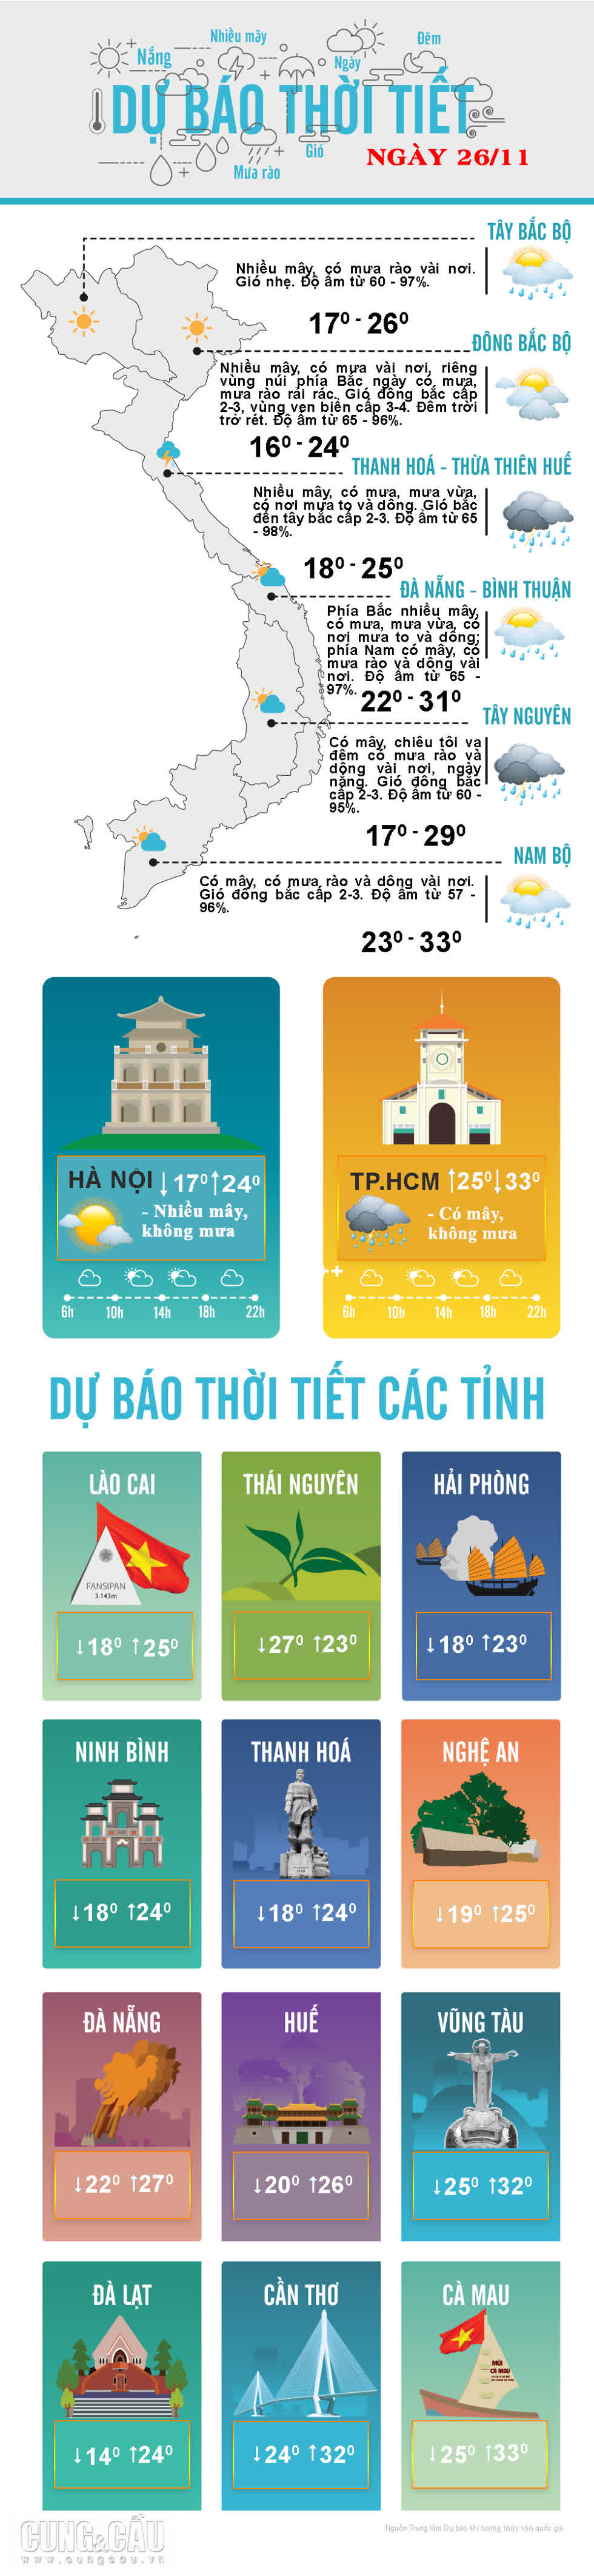 Thời tiết ngày 26/11: Hà Nội có mưa vài nơi, đêm và sáng trời rét